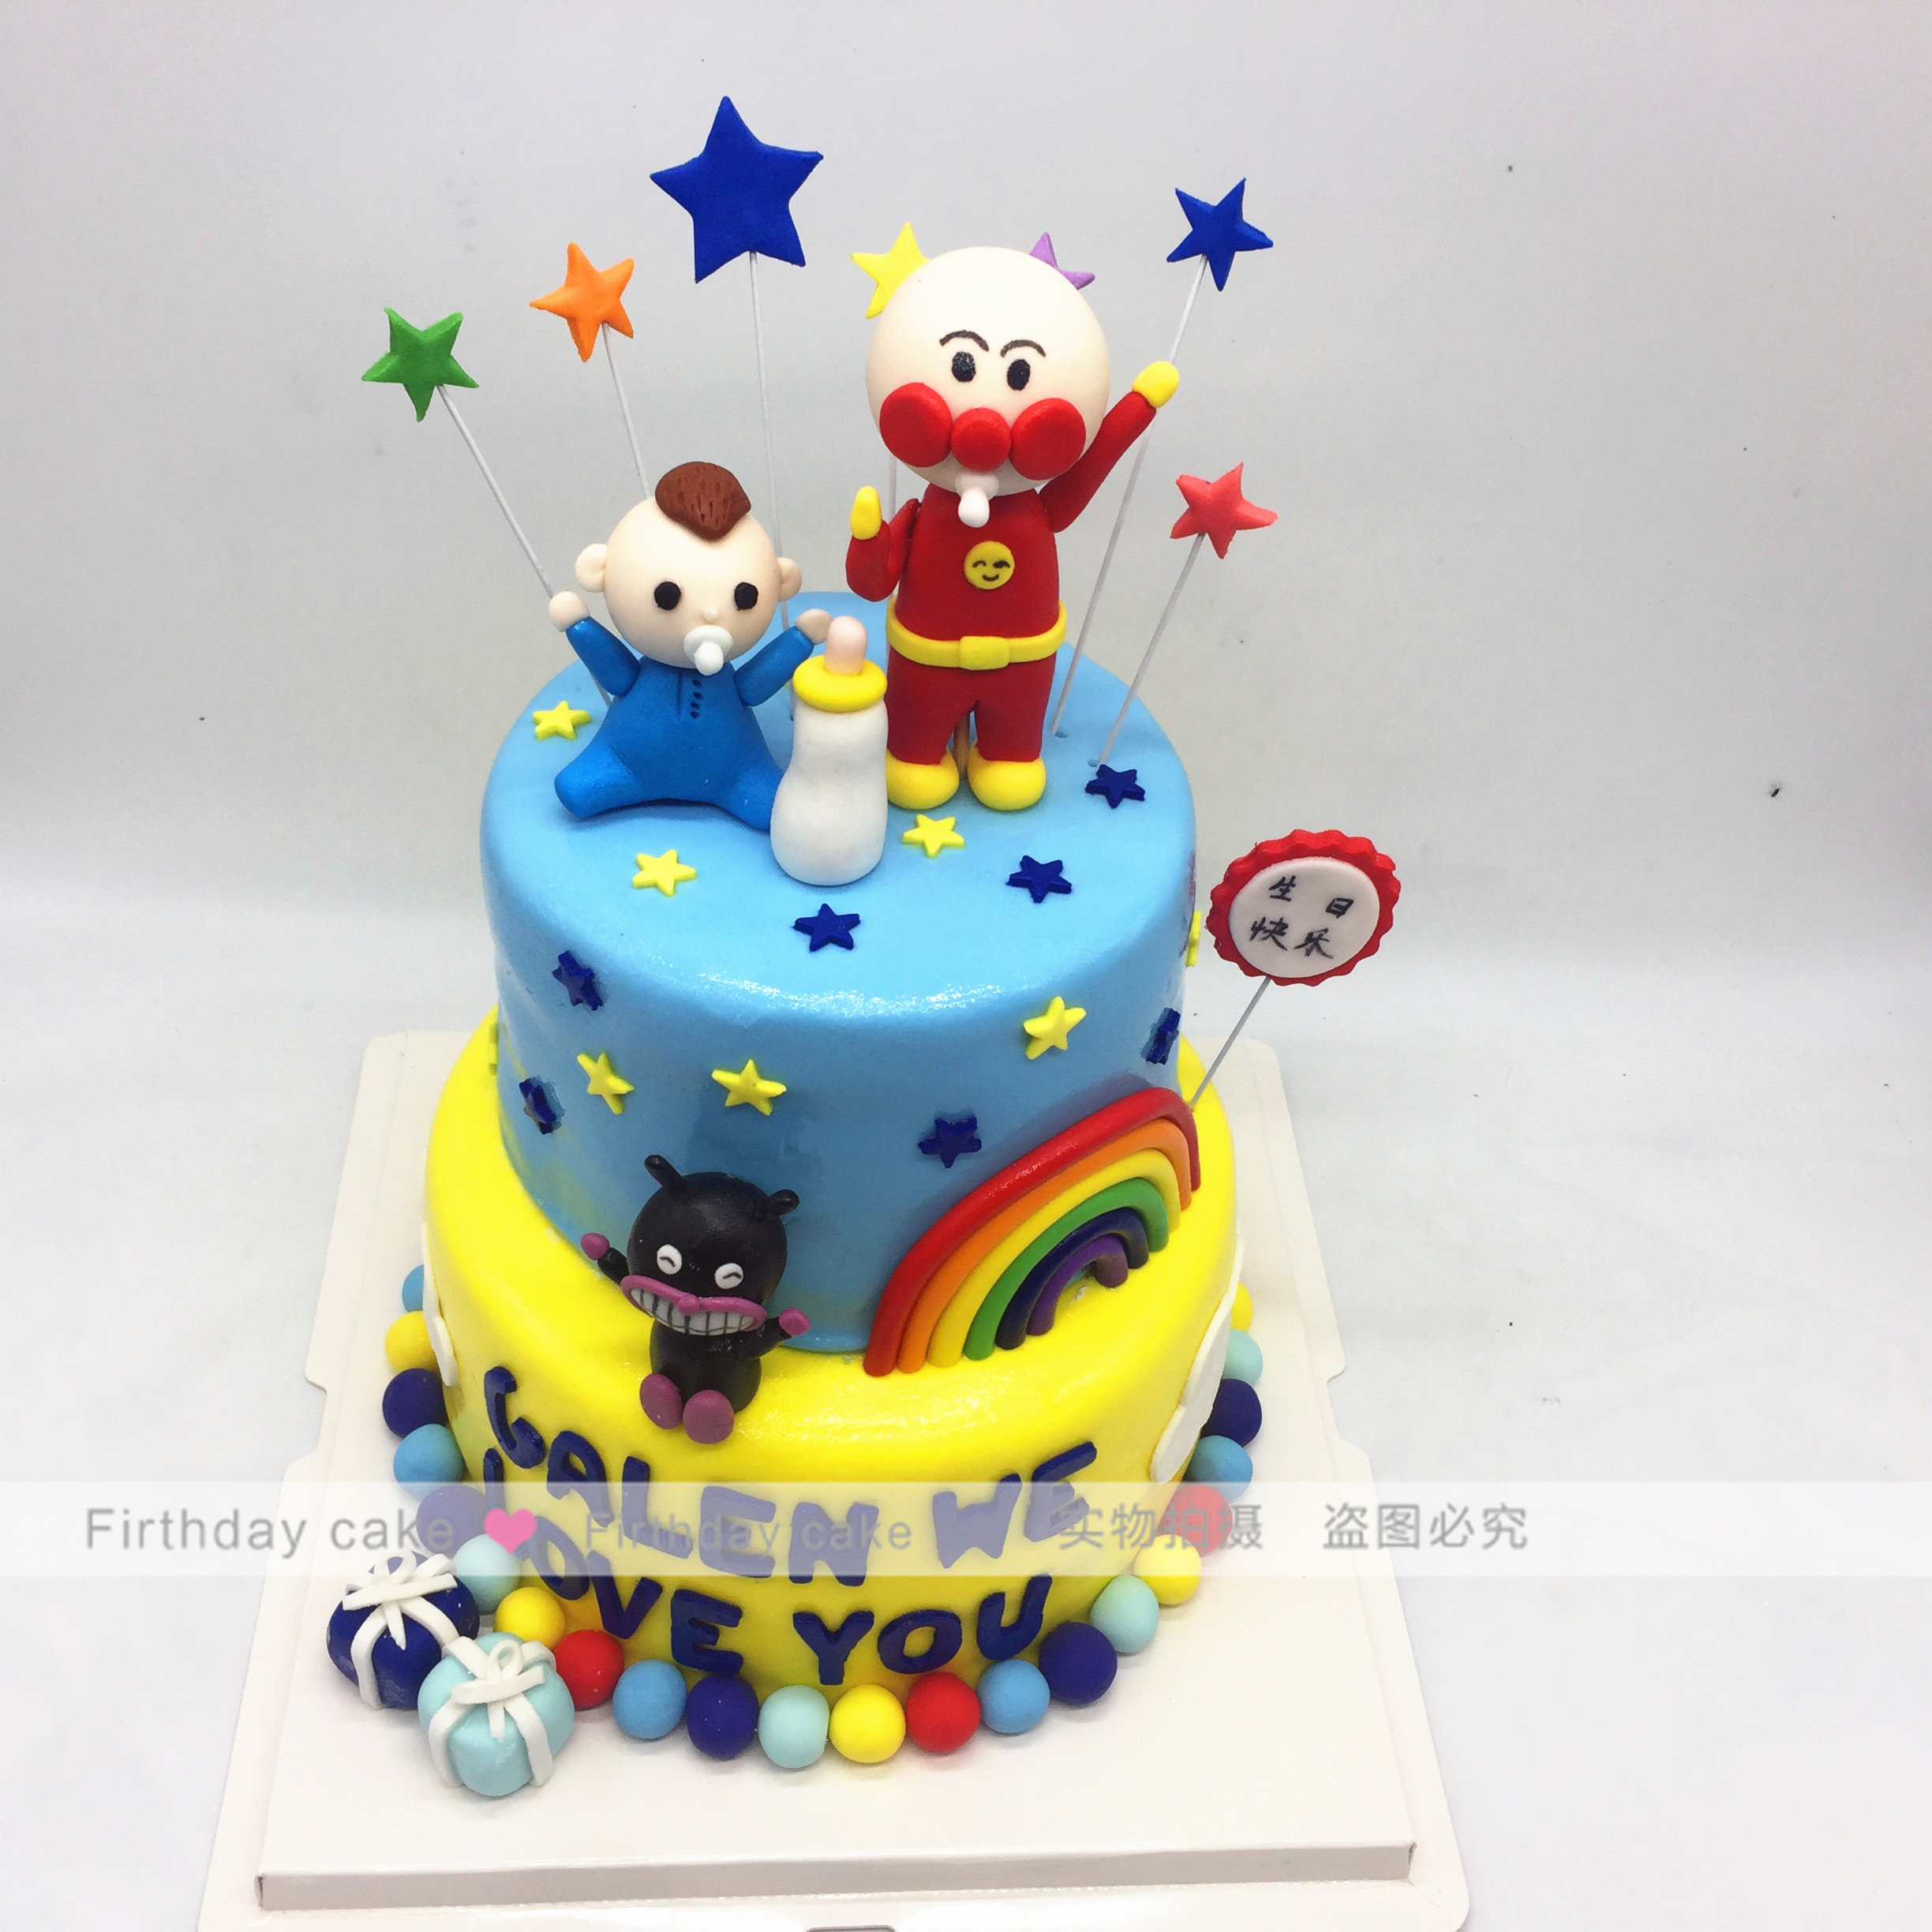 面包超人生日蛋糕北京北京上海杭州同城周岁百天翻糖定制创意蛋糕